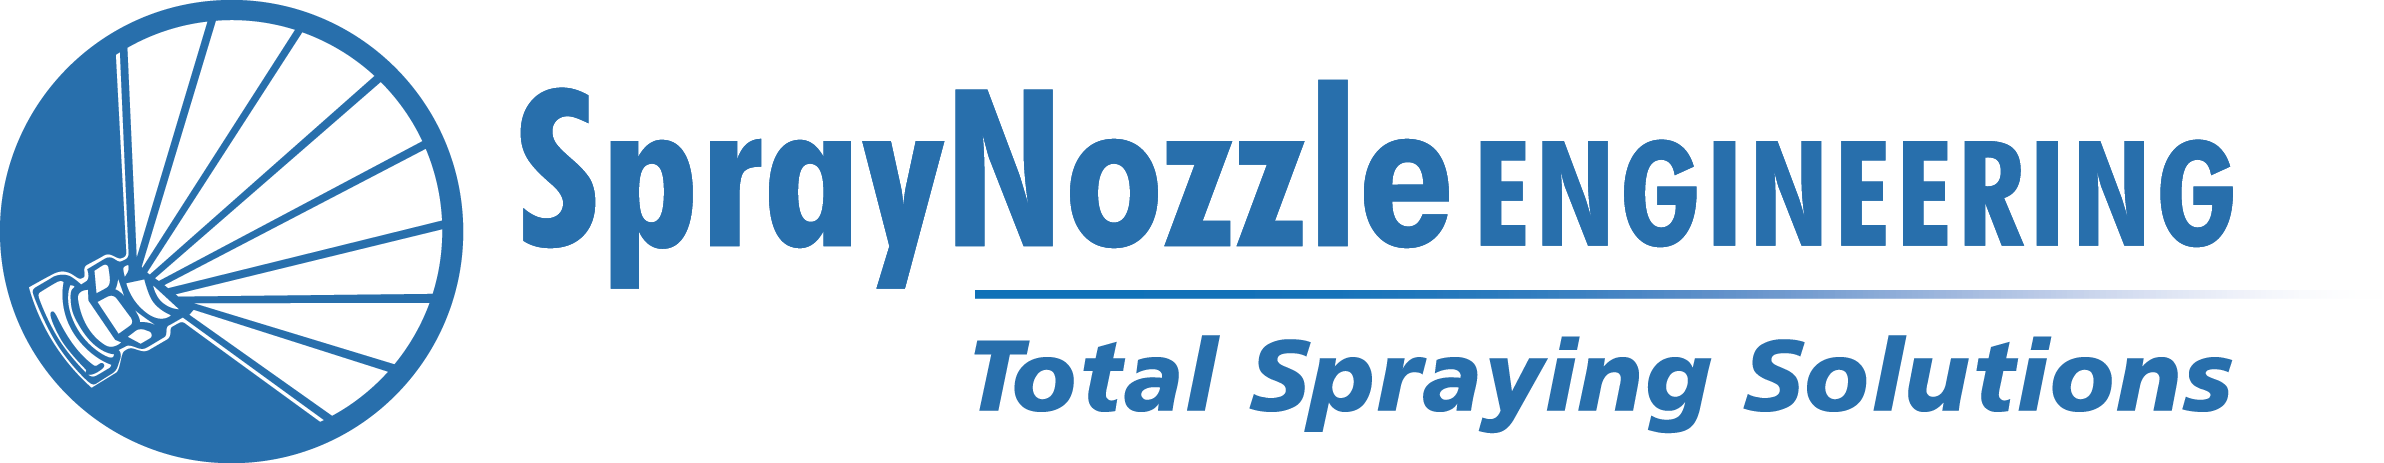 Spray Nozzle Engineering Pty Ltd